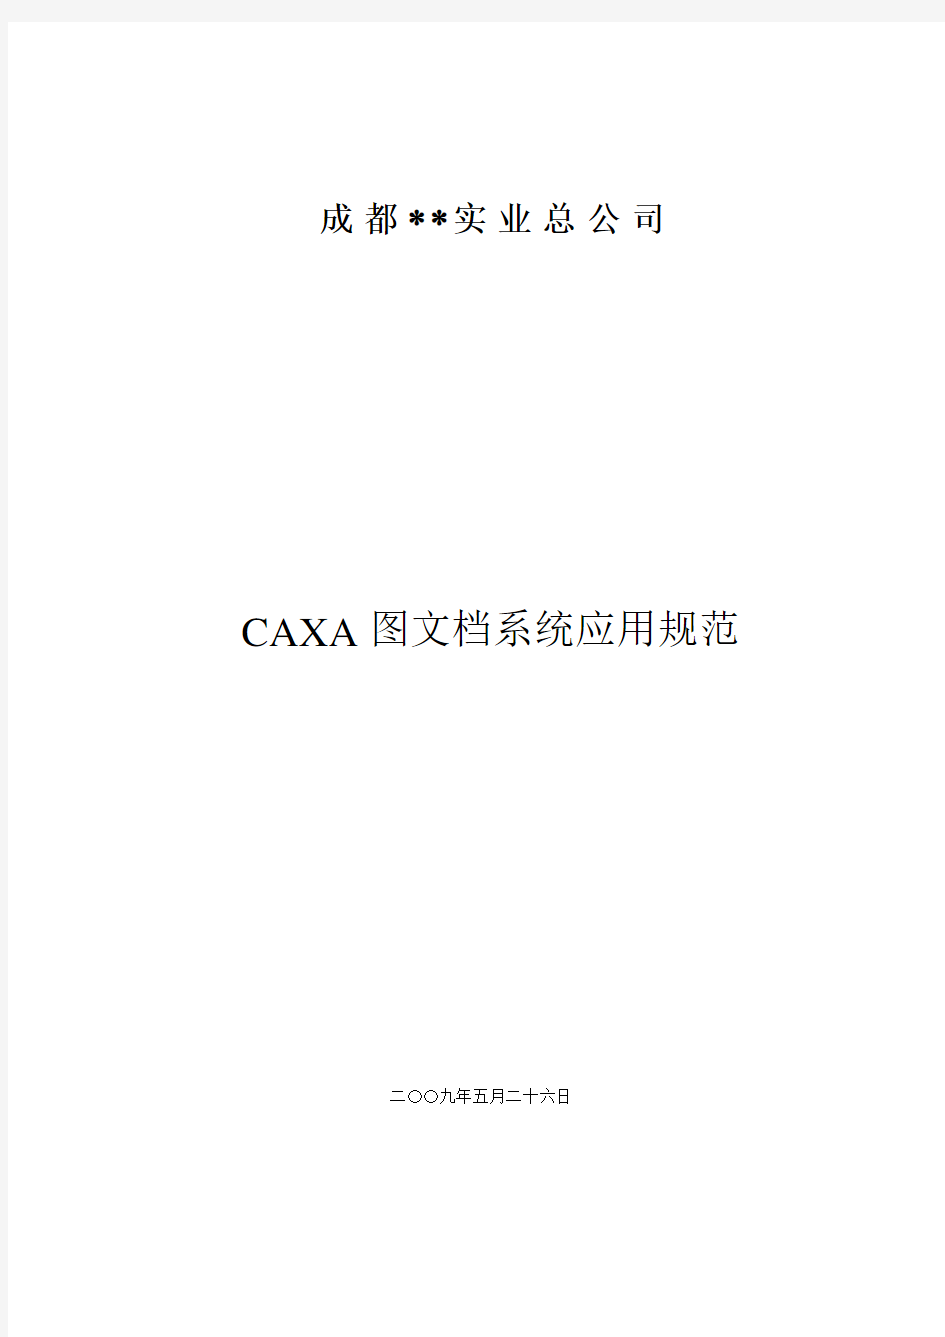 CAXA图文档系统培训资料